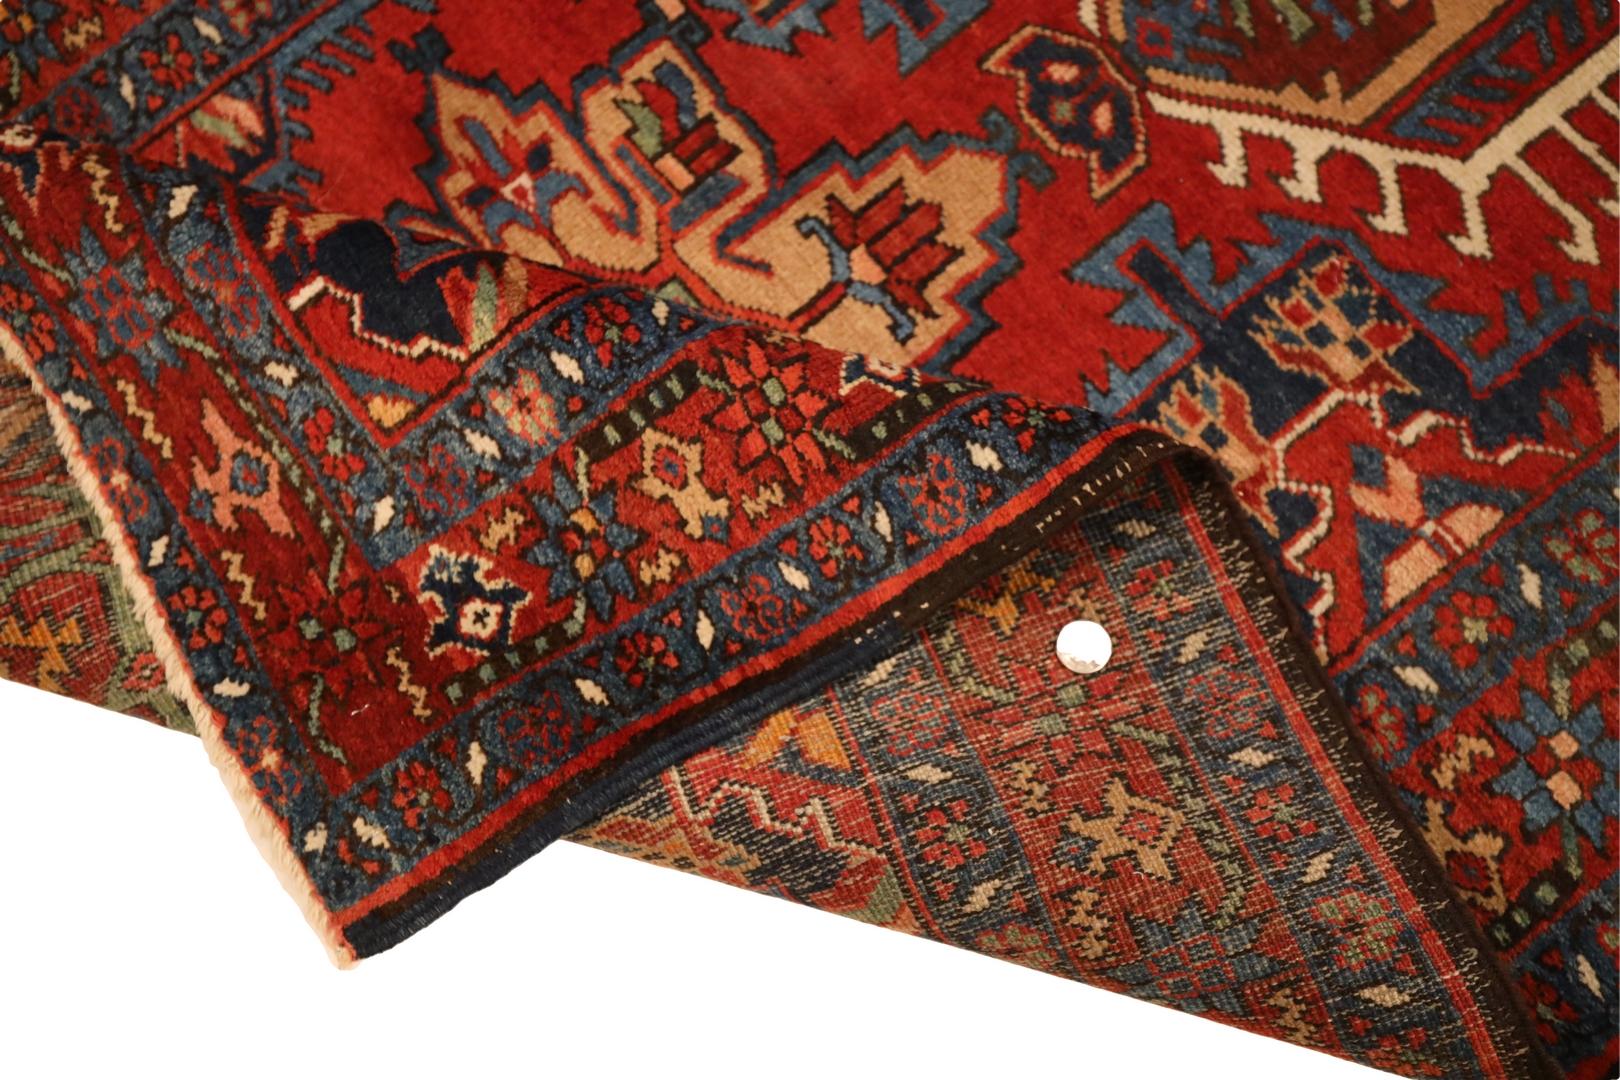 N.W. Persischer halb antiker Teppich, rot-beige, Meeresgrün, 3'2